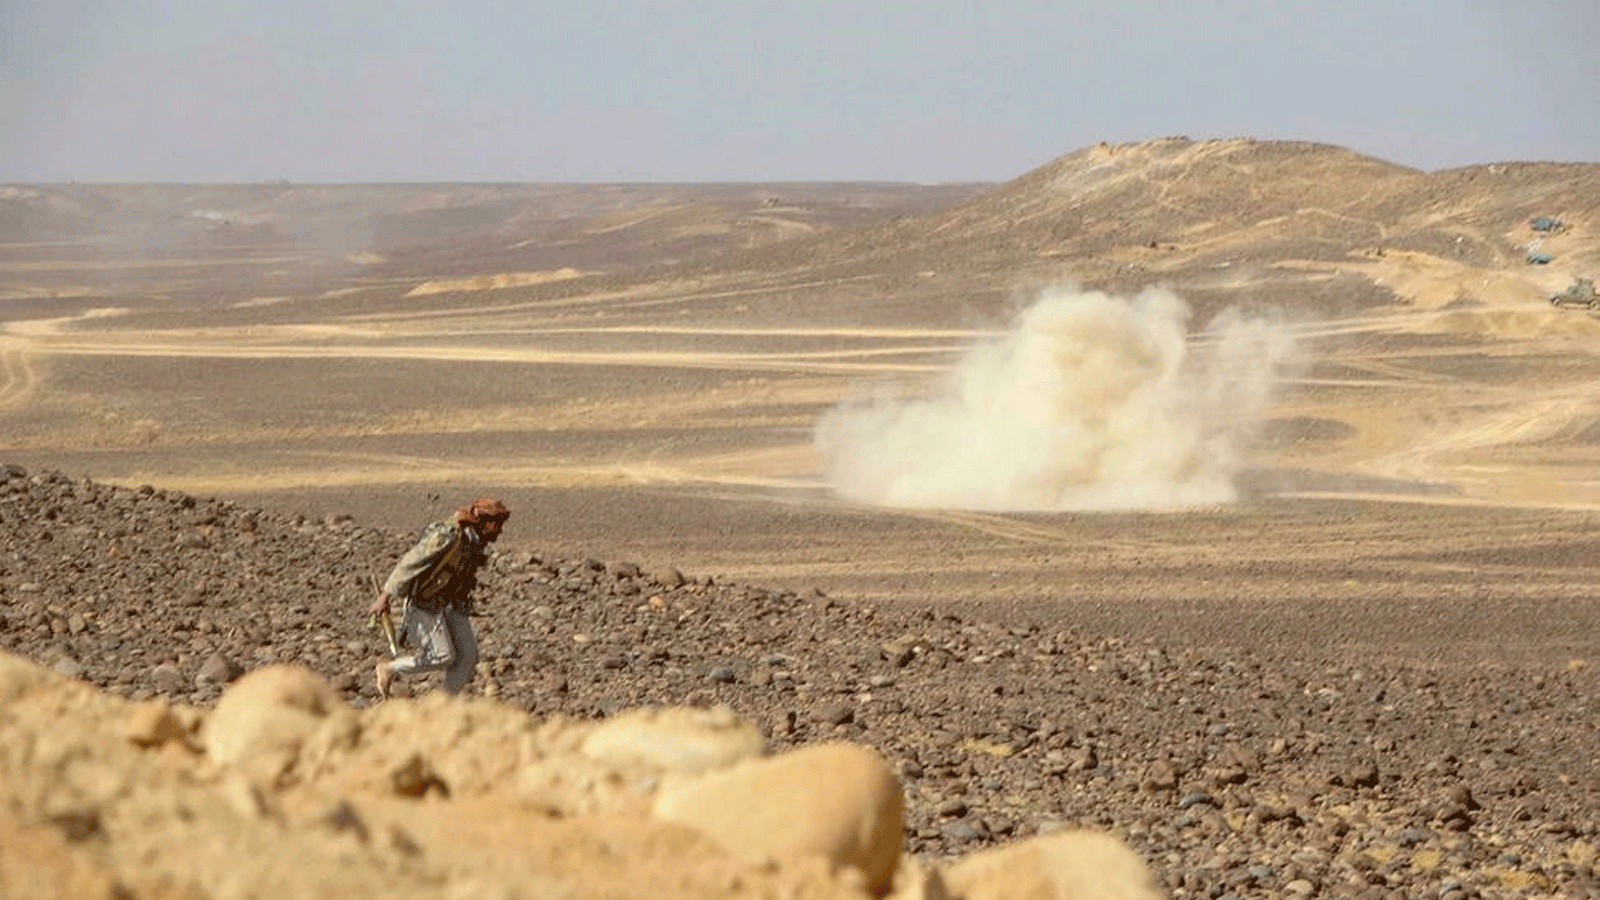 الدخان يتصاعد خلال الاشتباكات بين القوات الموالية للحكومة اليمنية ومقاتلي الحوثيين في منطقة الجدعان على بعد 50 كيلومترًا شمال غرب مأرب بوسط اليمن في 11 فبراير / شباط 2021.